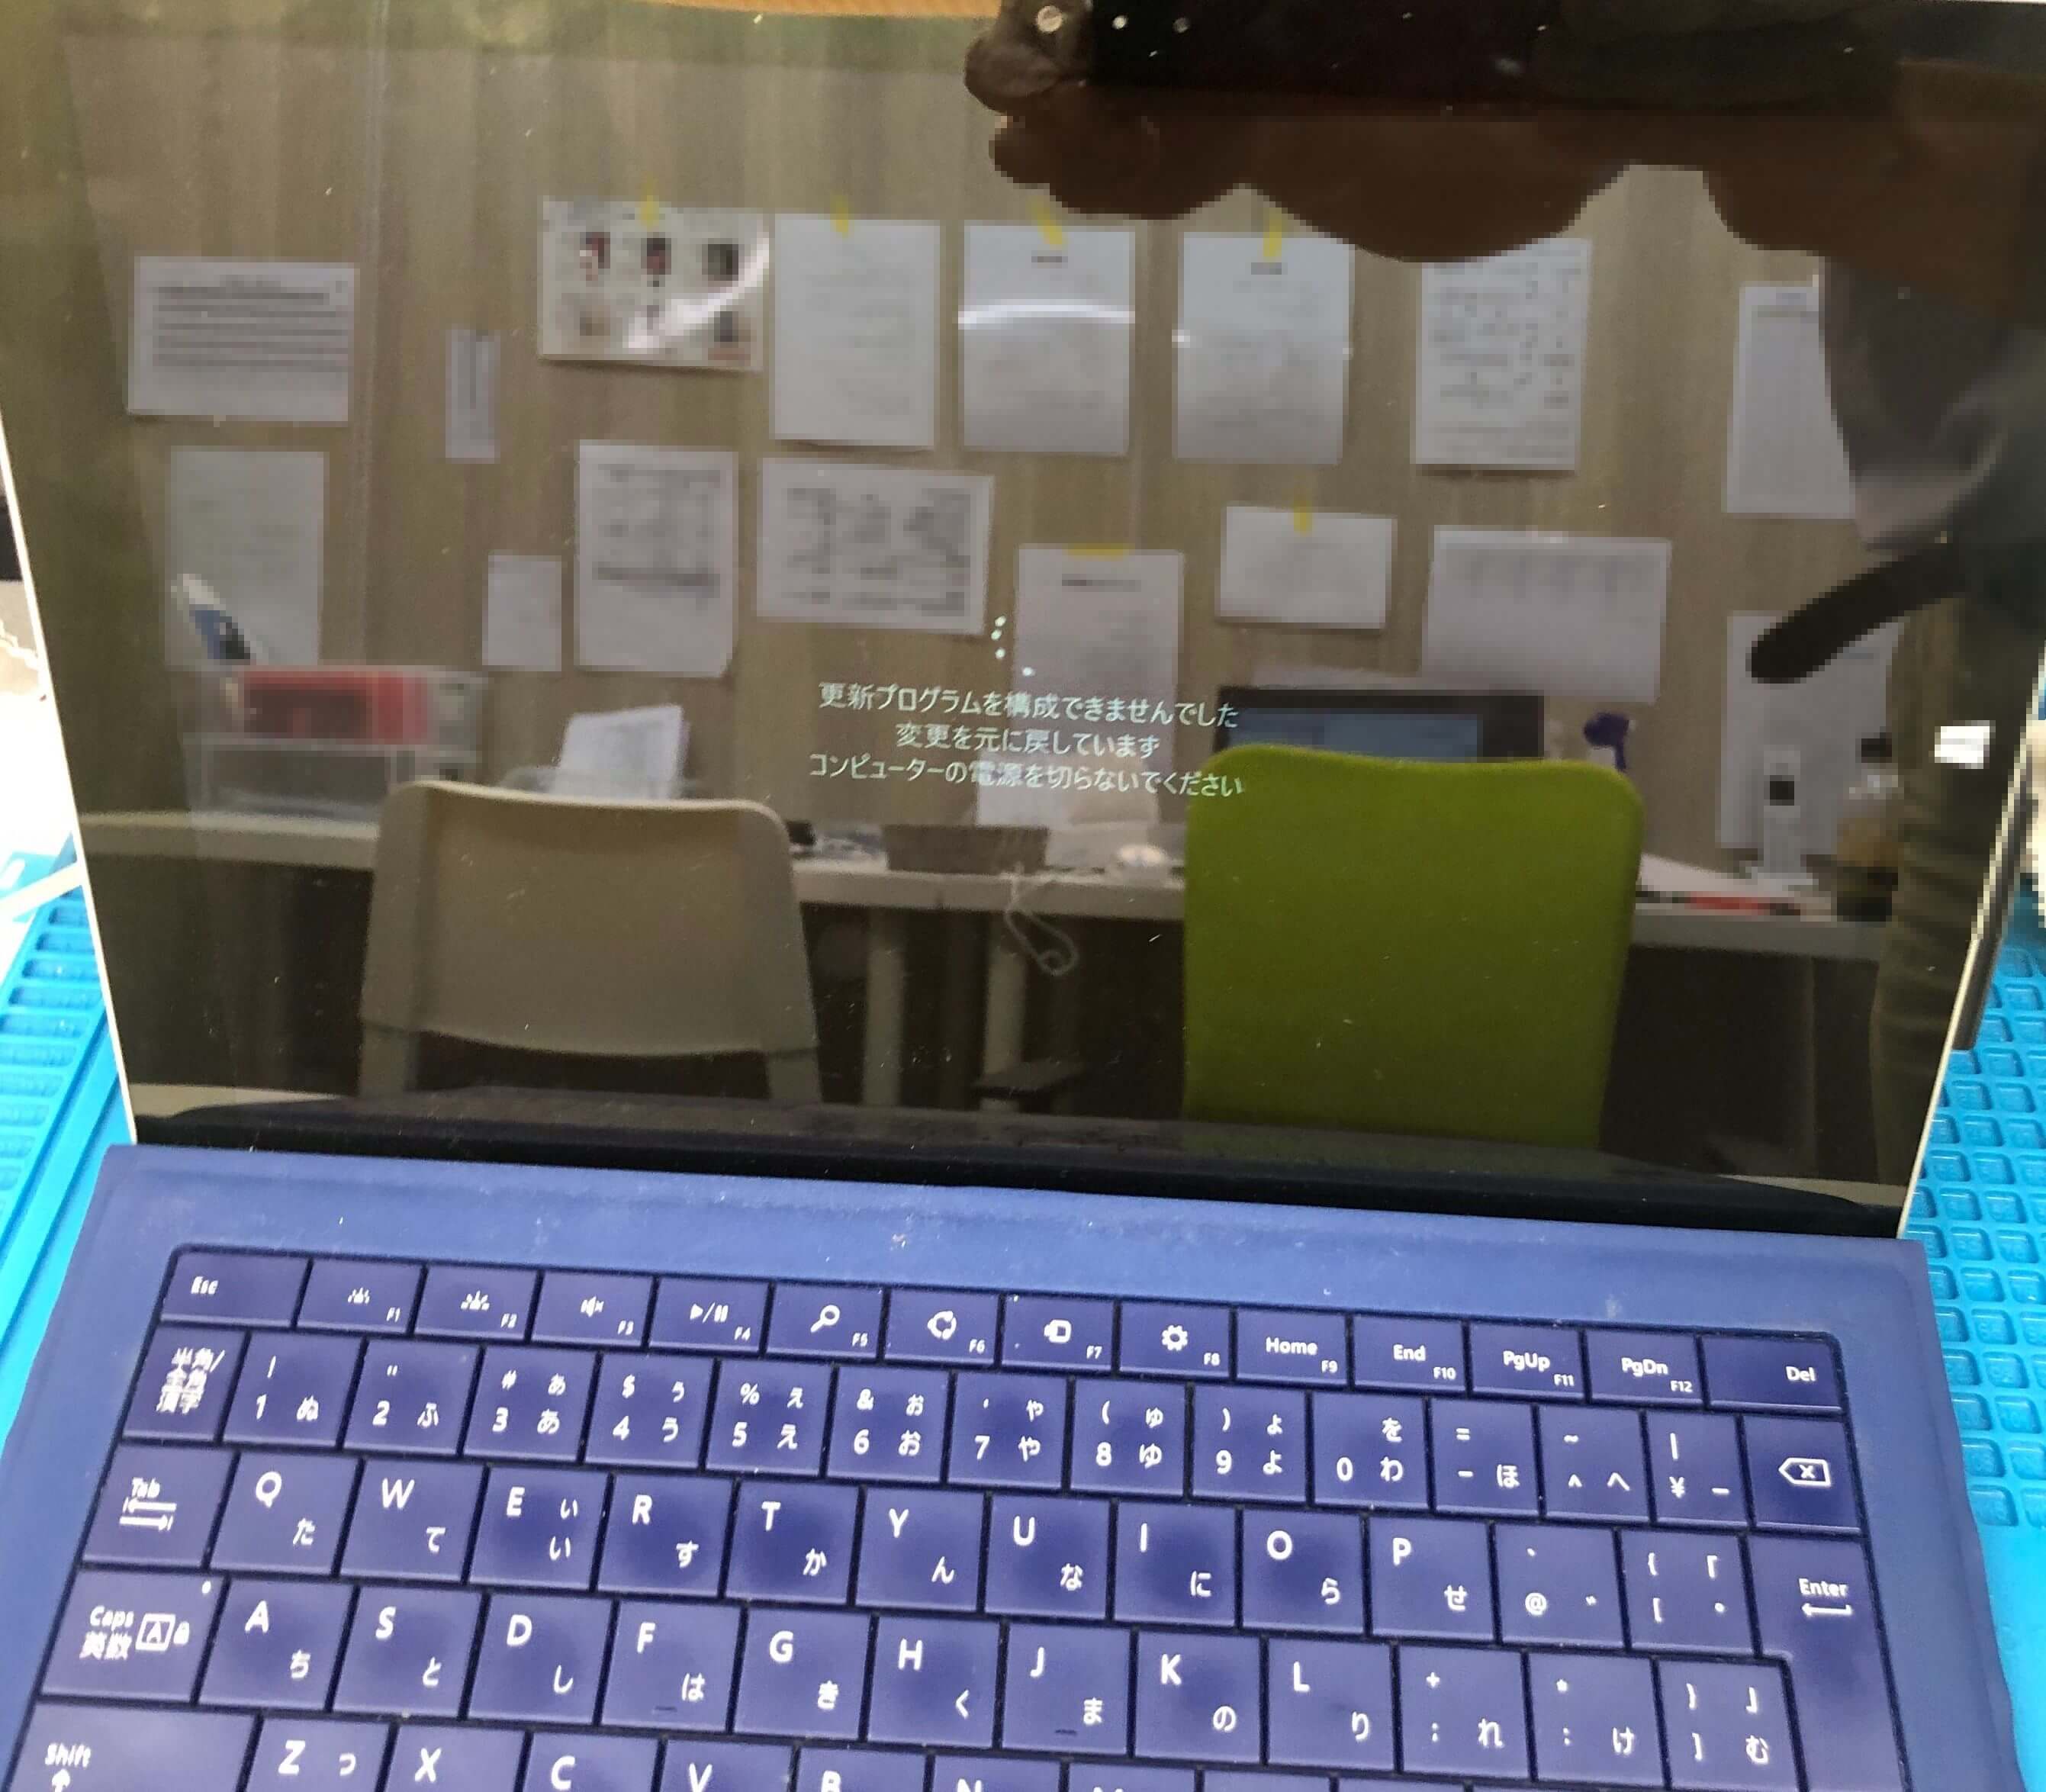 ブルースクリーン Surface Pro3修理 19年11月1日